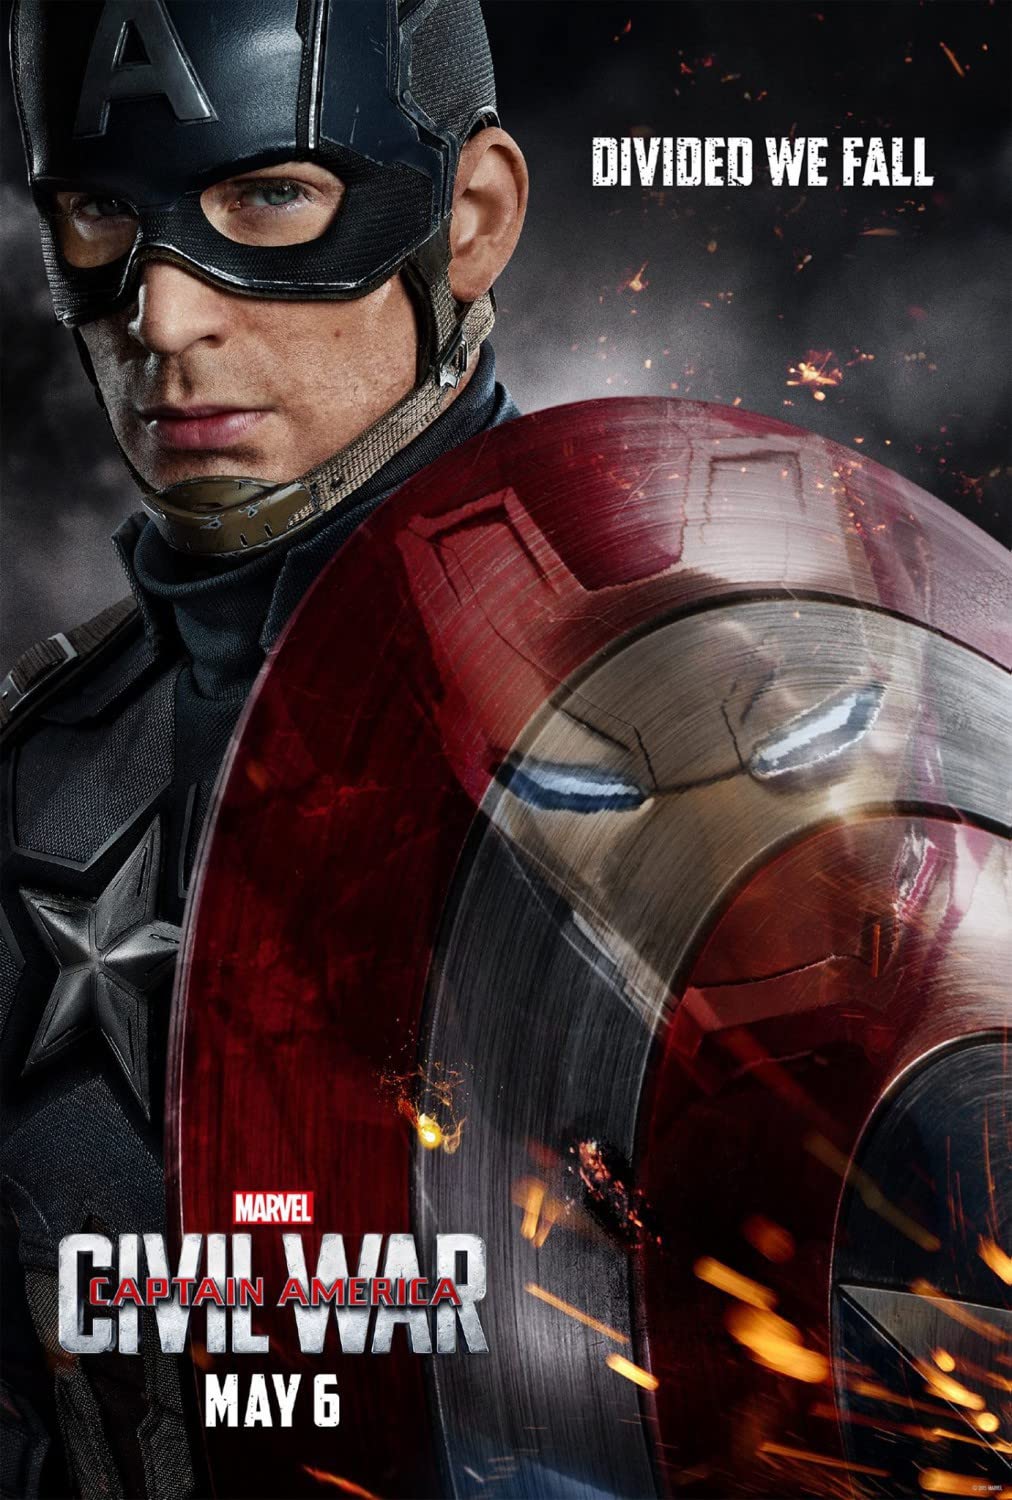 Captain America: Civil War (2016) Robert Downey Jr. and Chris Evans in Captain America: Civil War (2016)